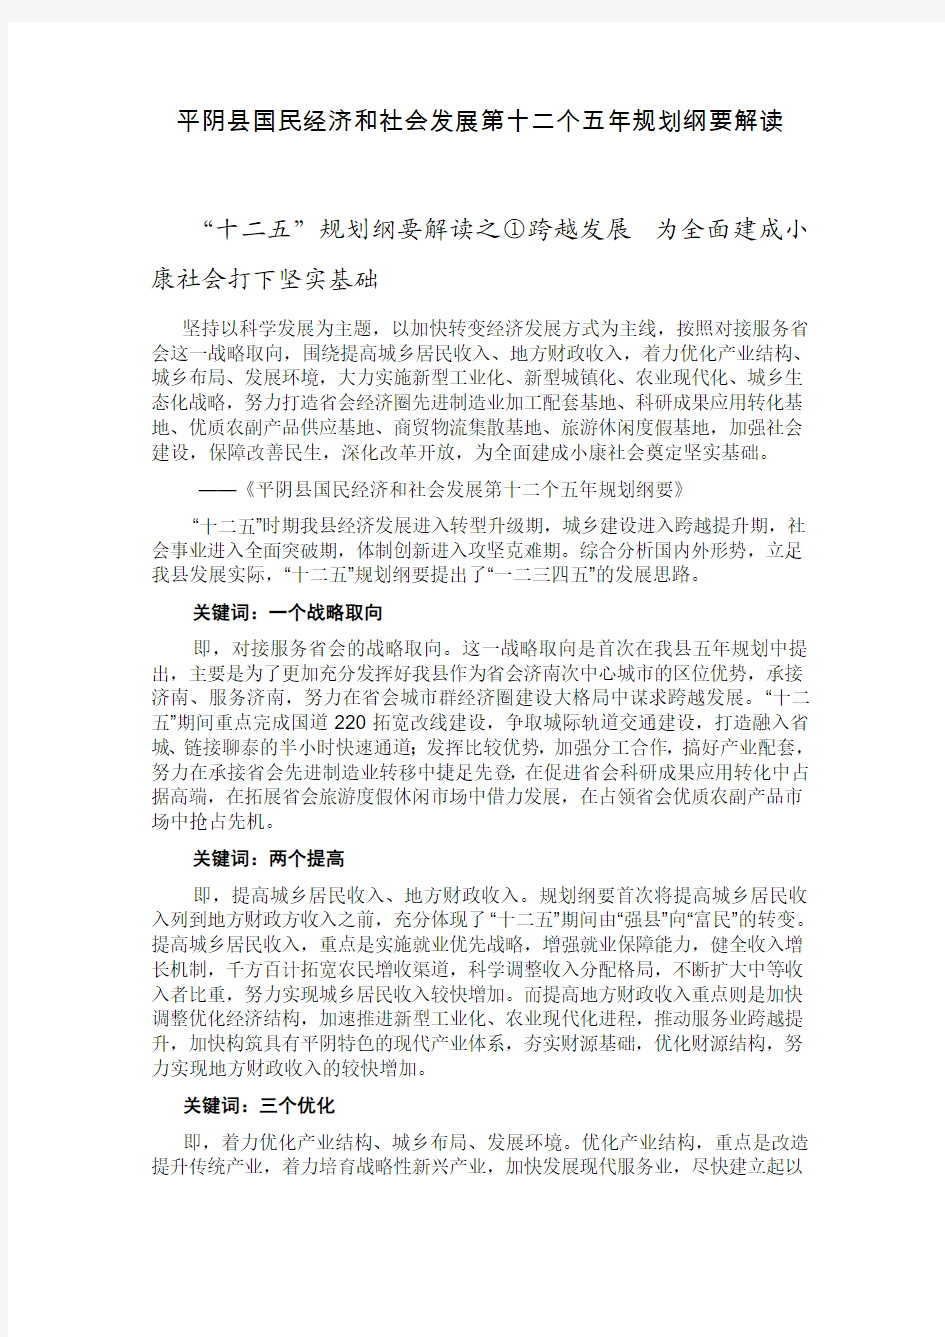 平阴县国民经济和社会发展第十二个五年规划纲要解读